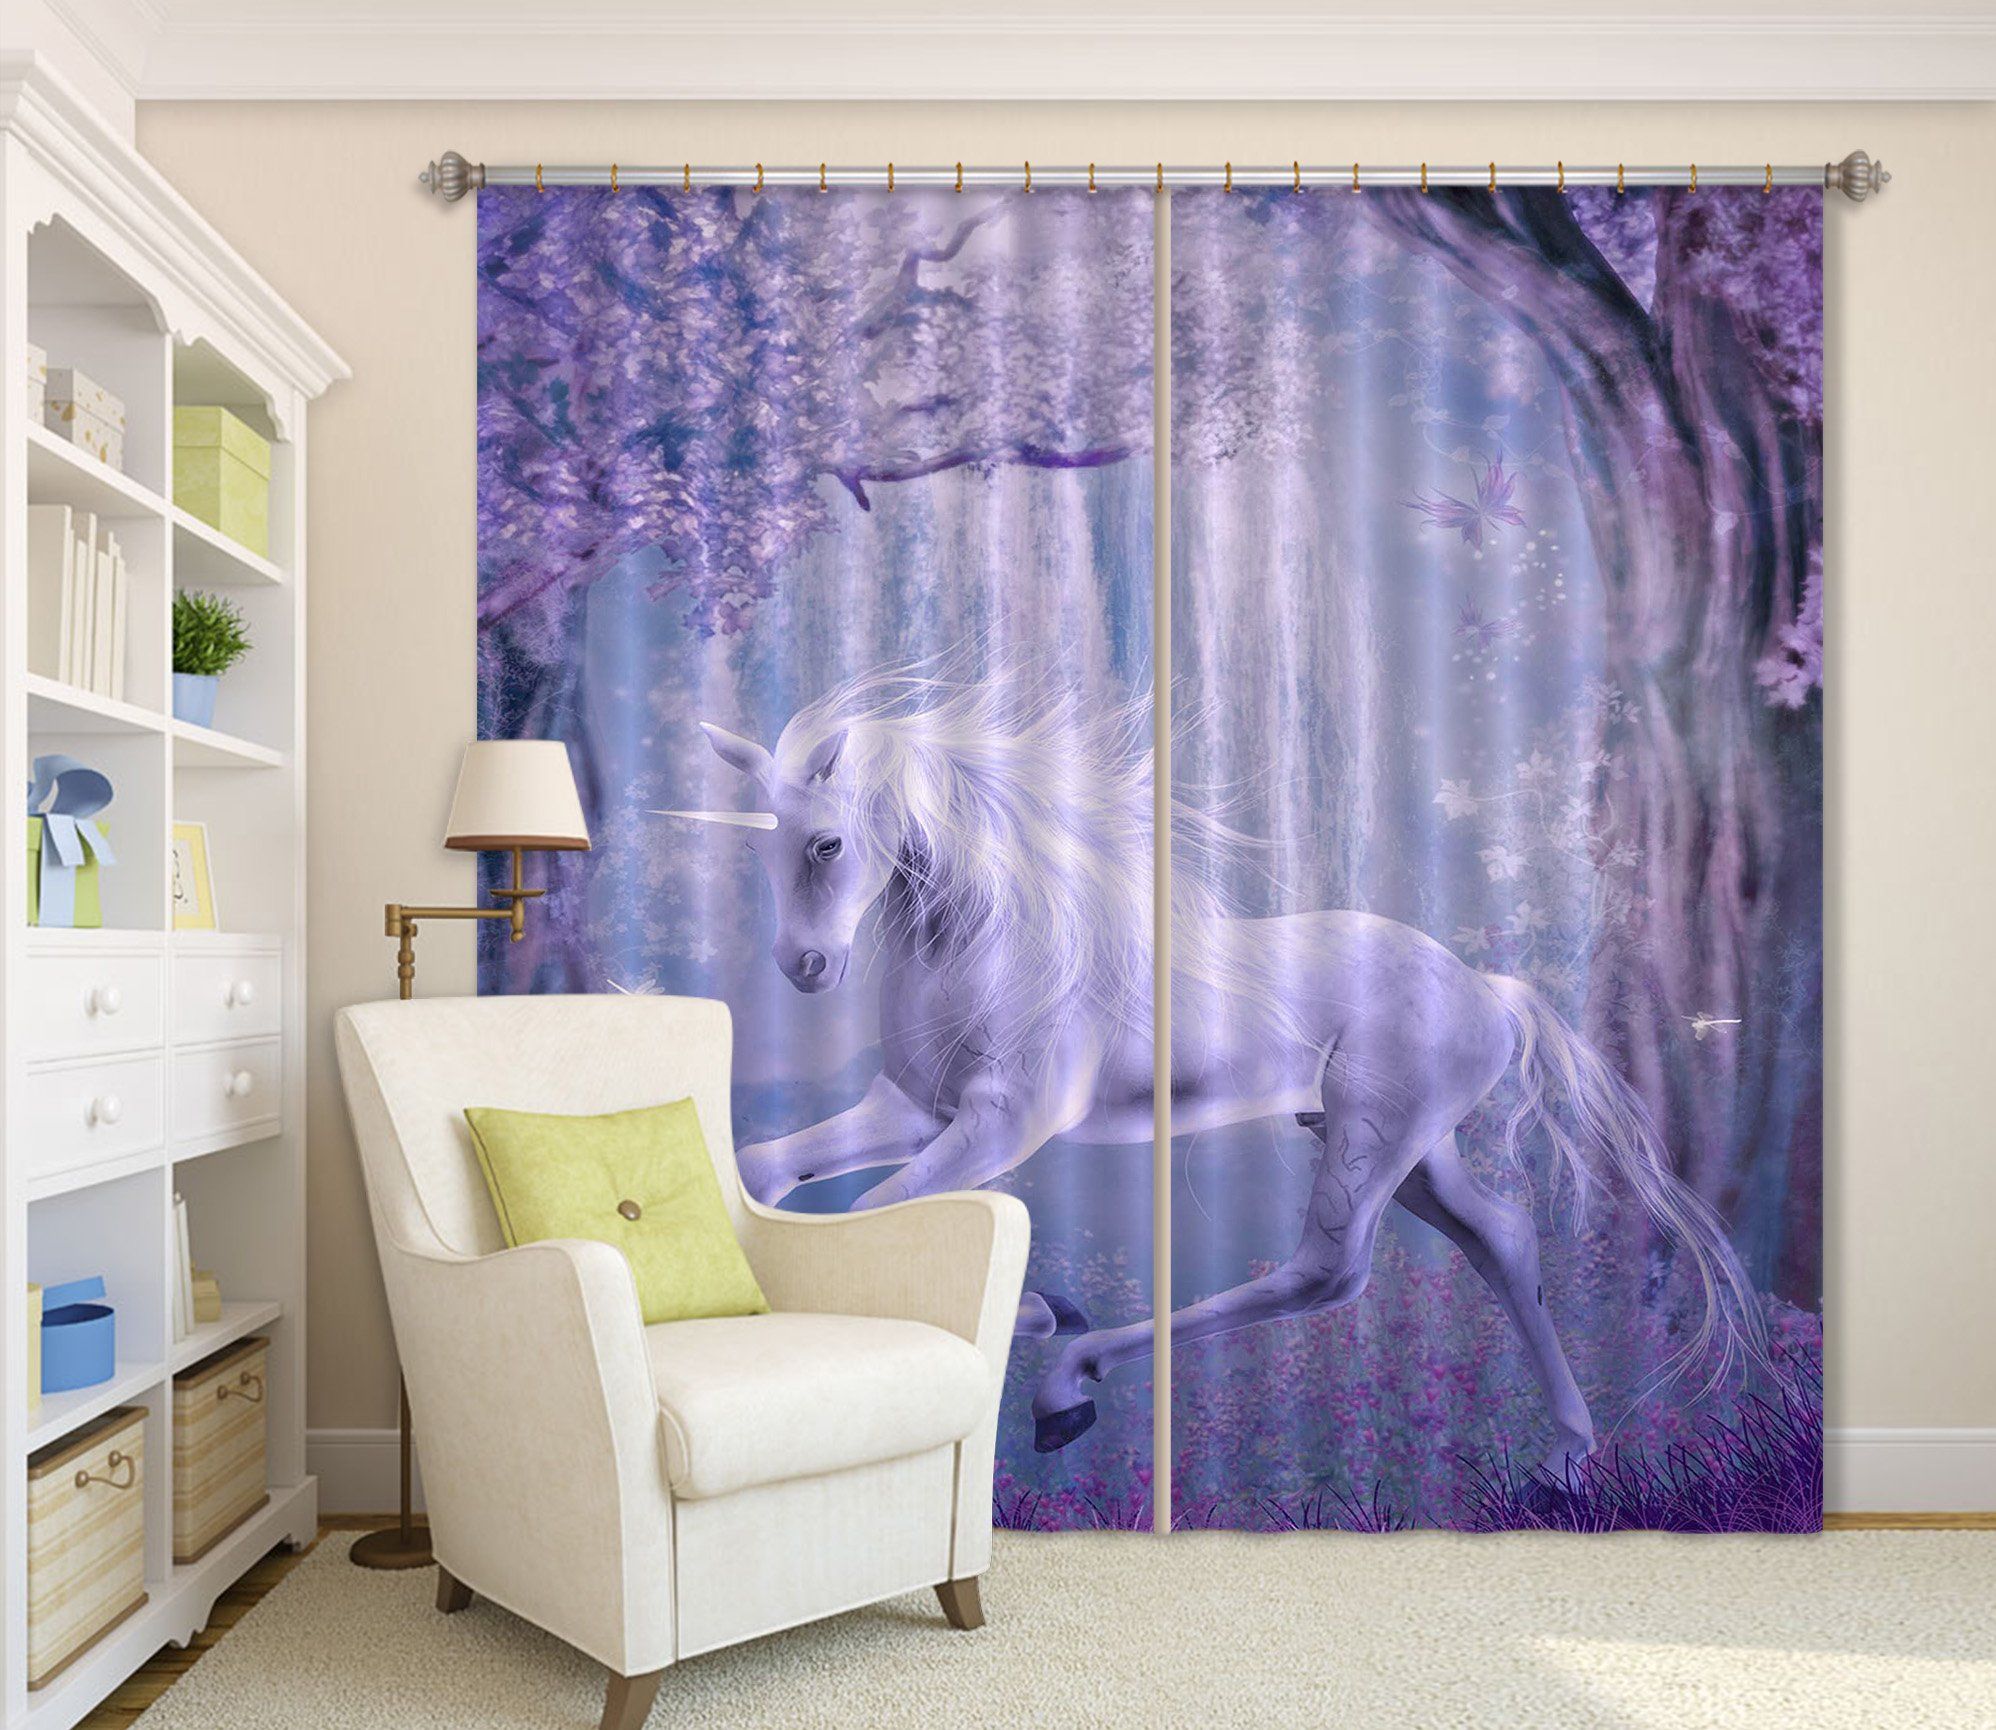 3D Dream Unicorn 082 Curtains Drapes Curtains AJ Creativity Home 